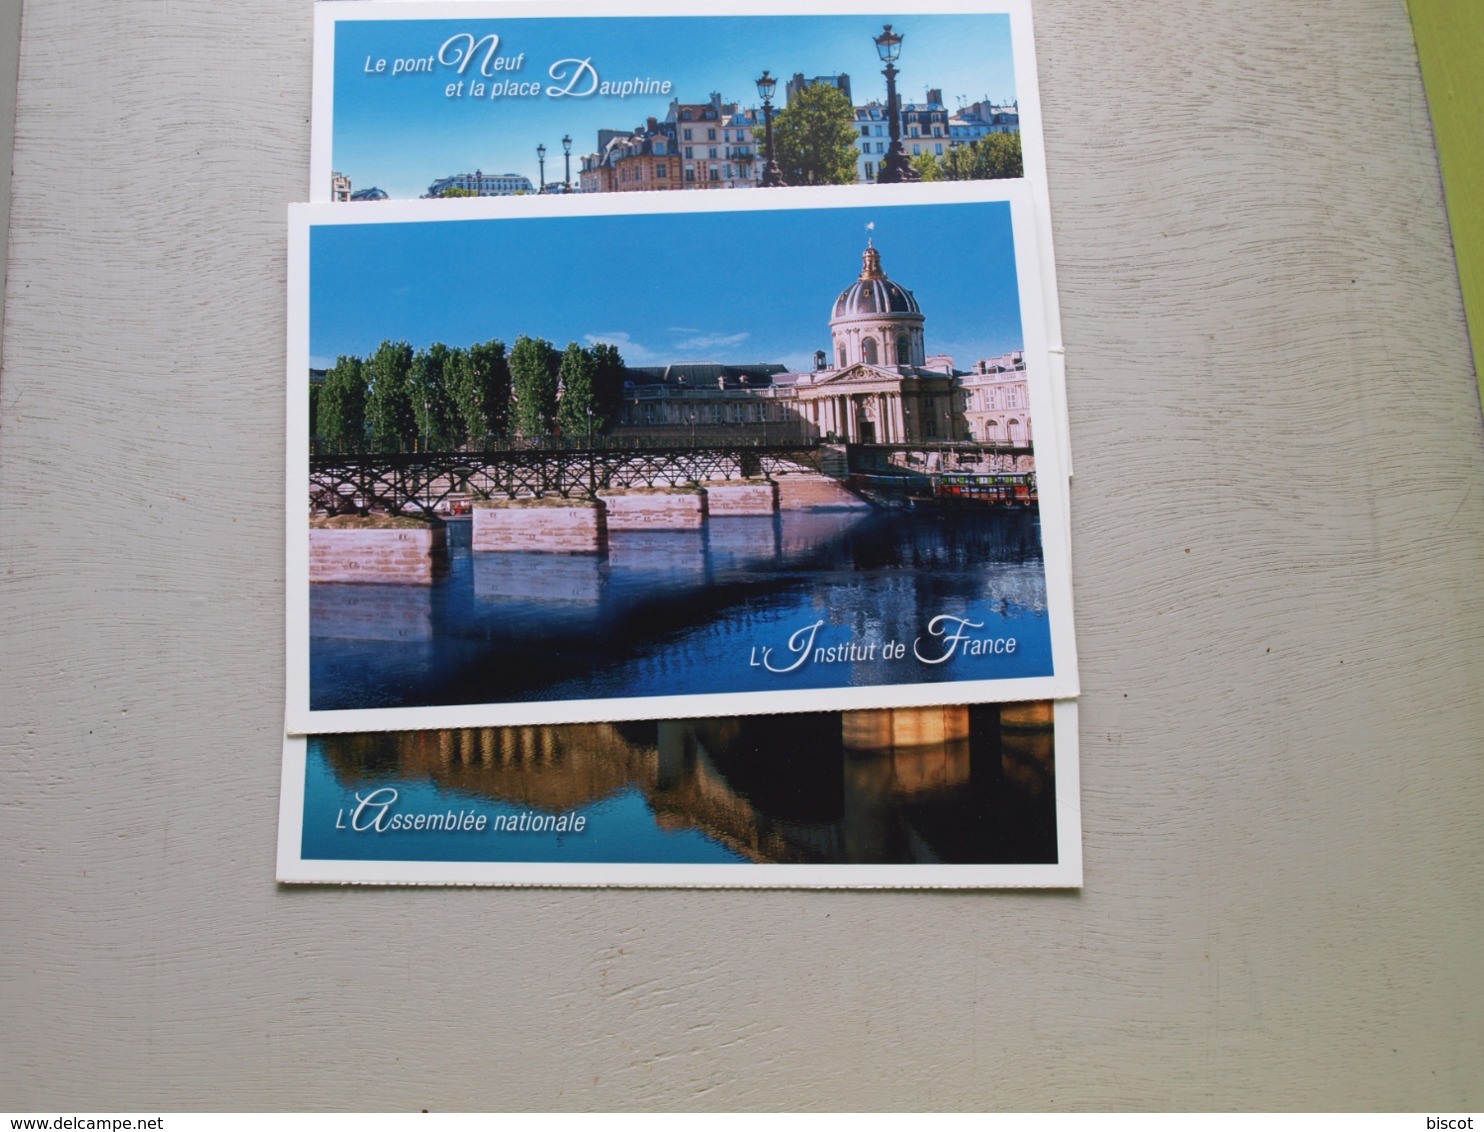 6 cartes prétimbrées  ponts de PARIS